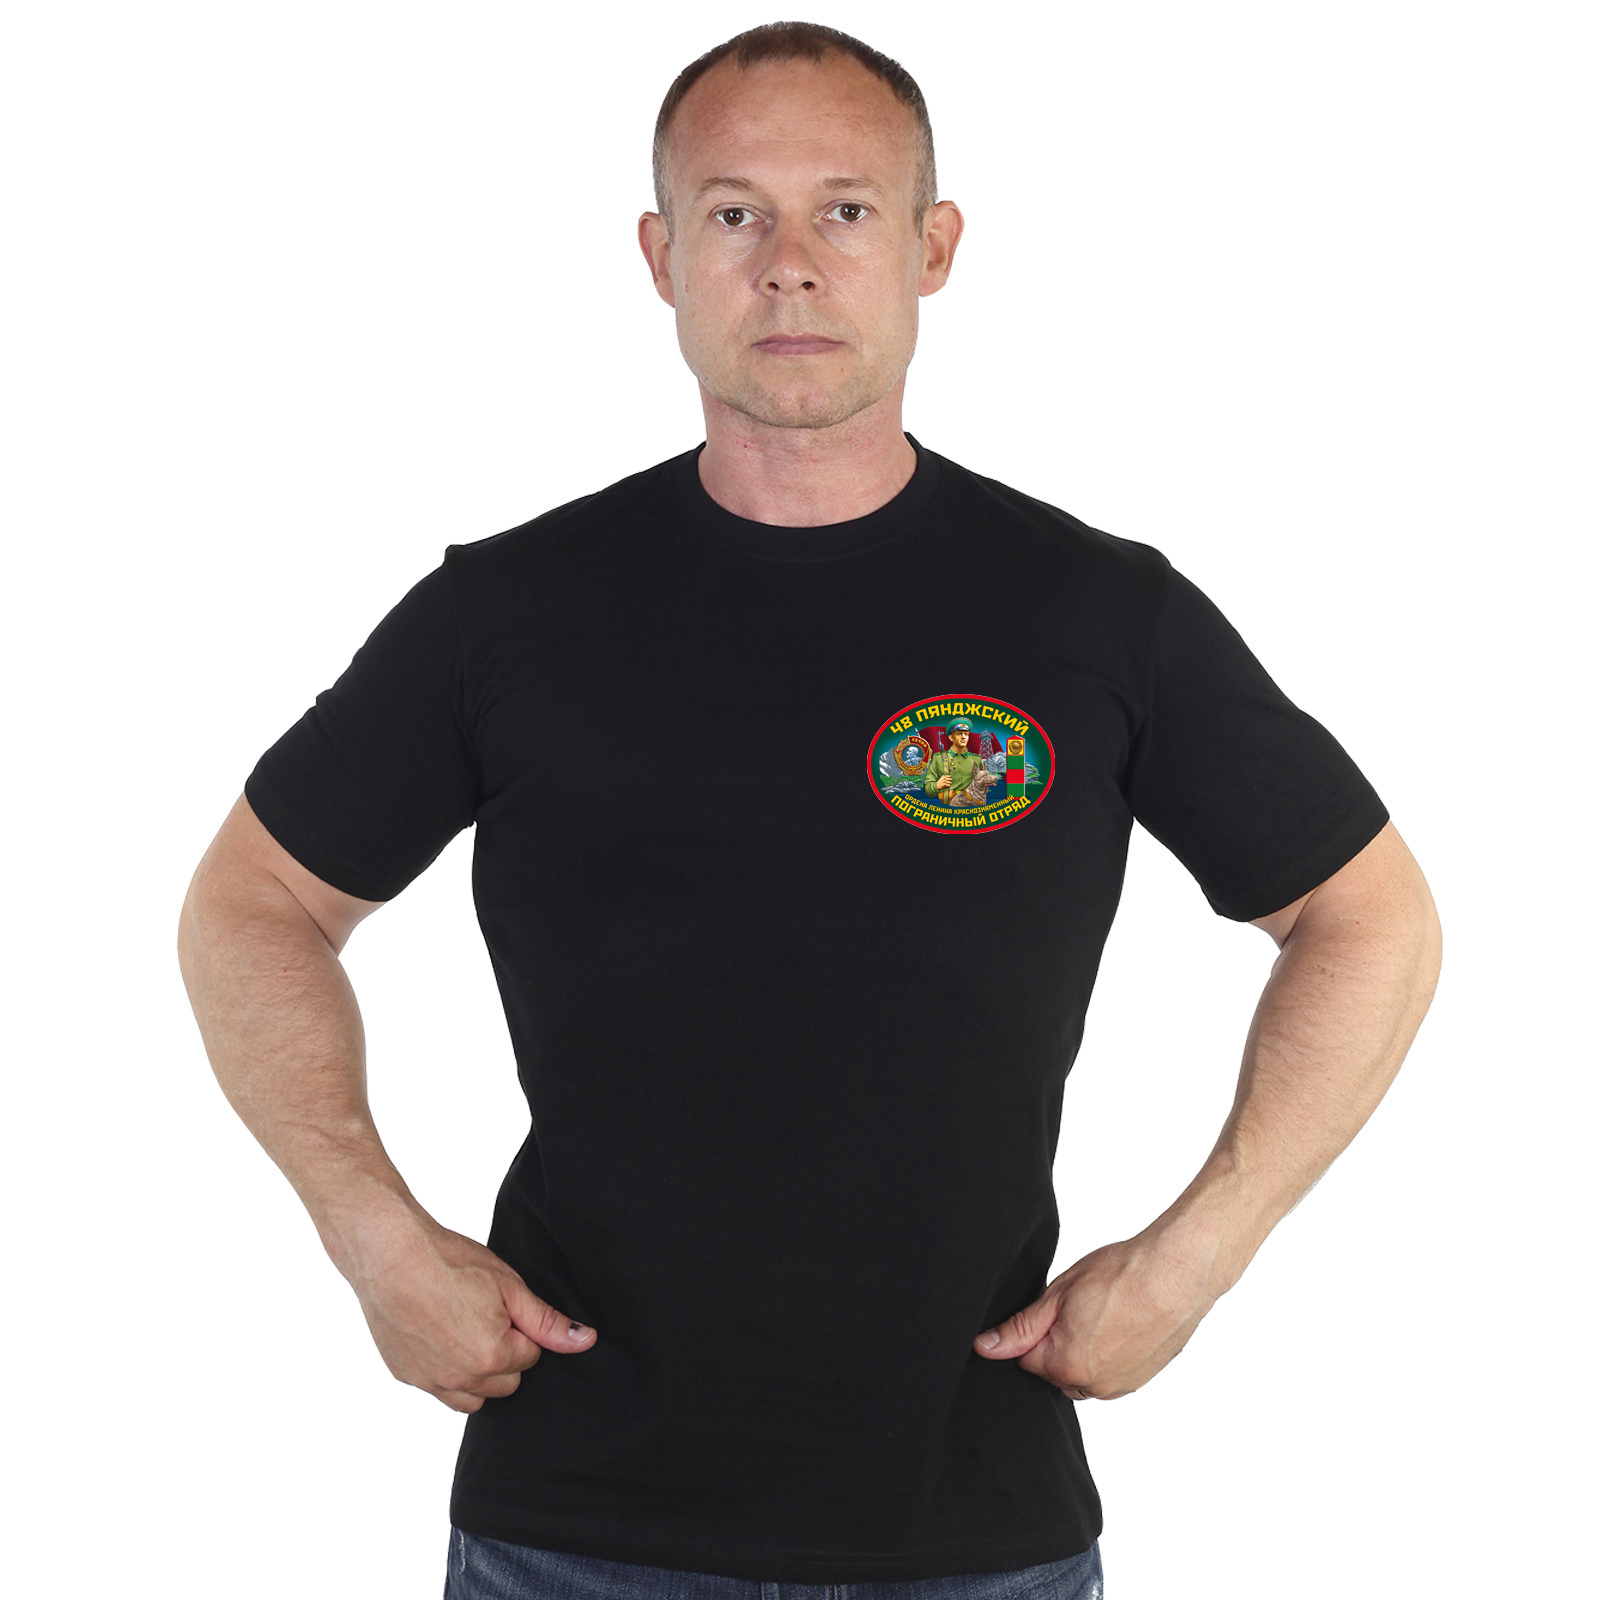 Чёрная футболка "48 Пянджский пограничный отряд" 